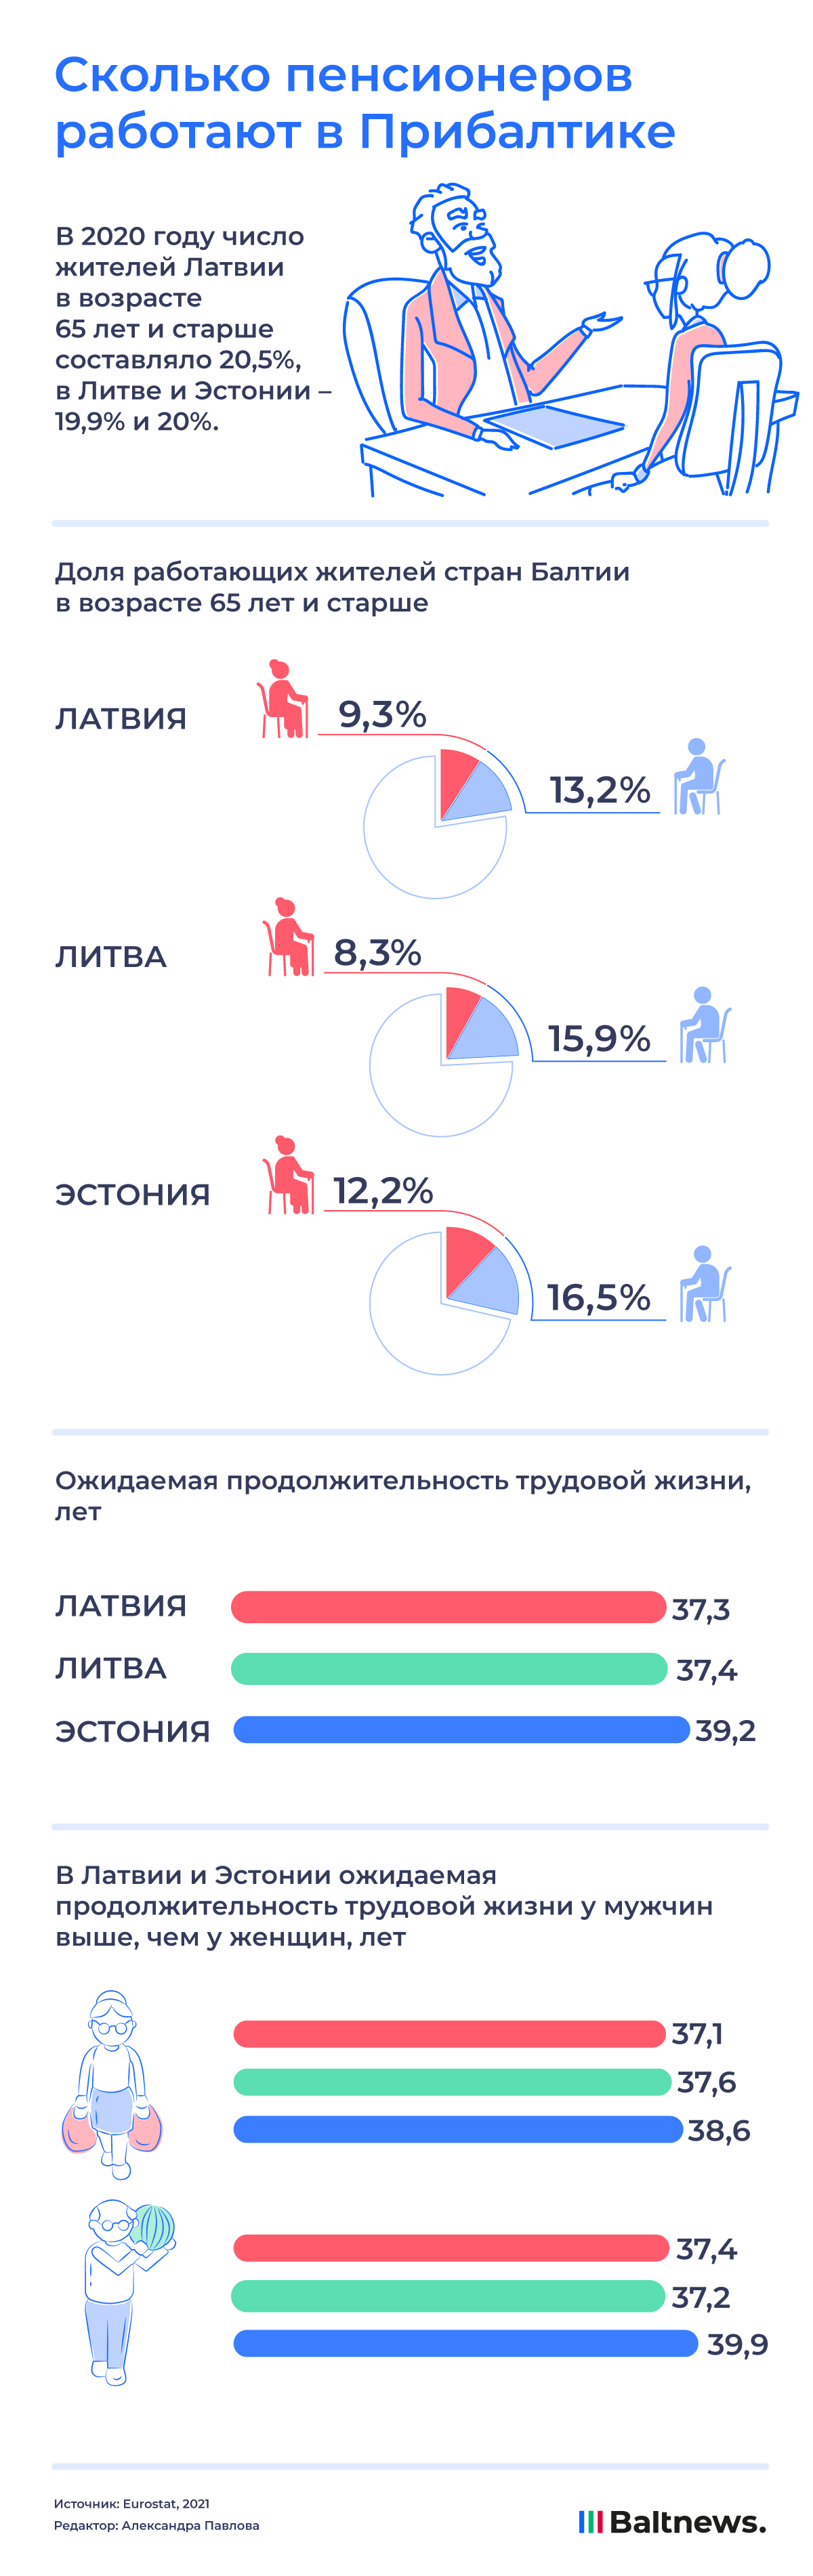 Сколько пенсионеров работают в Прибалтике